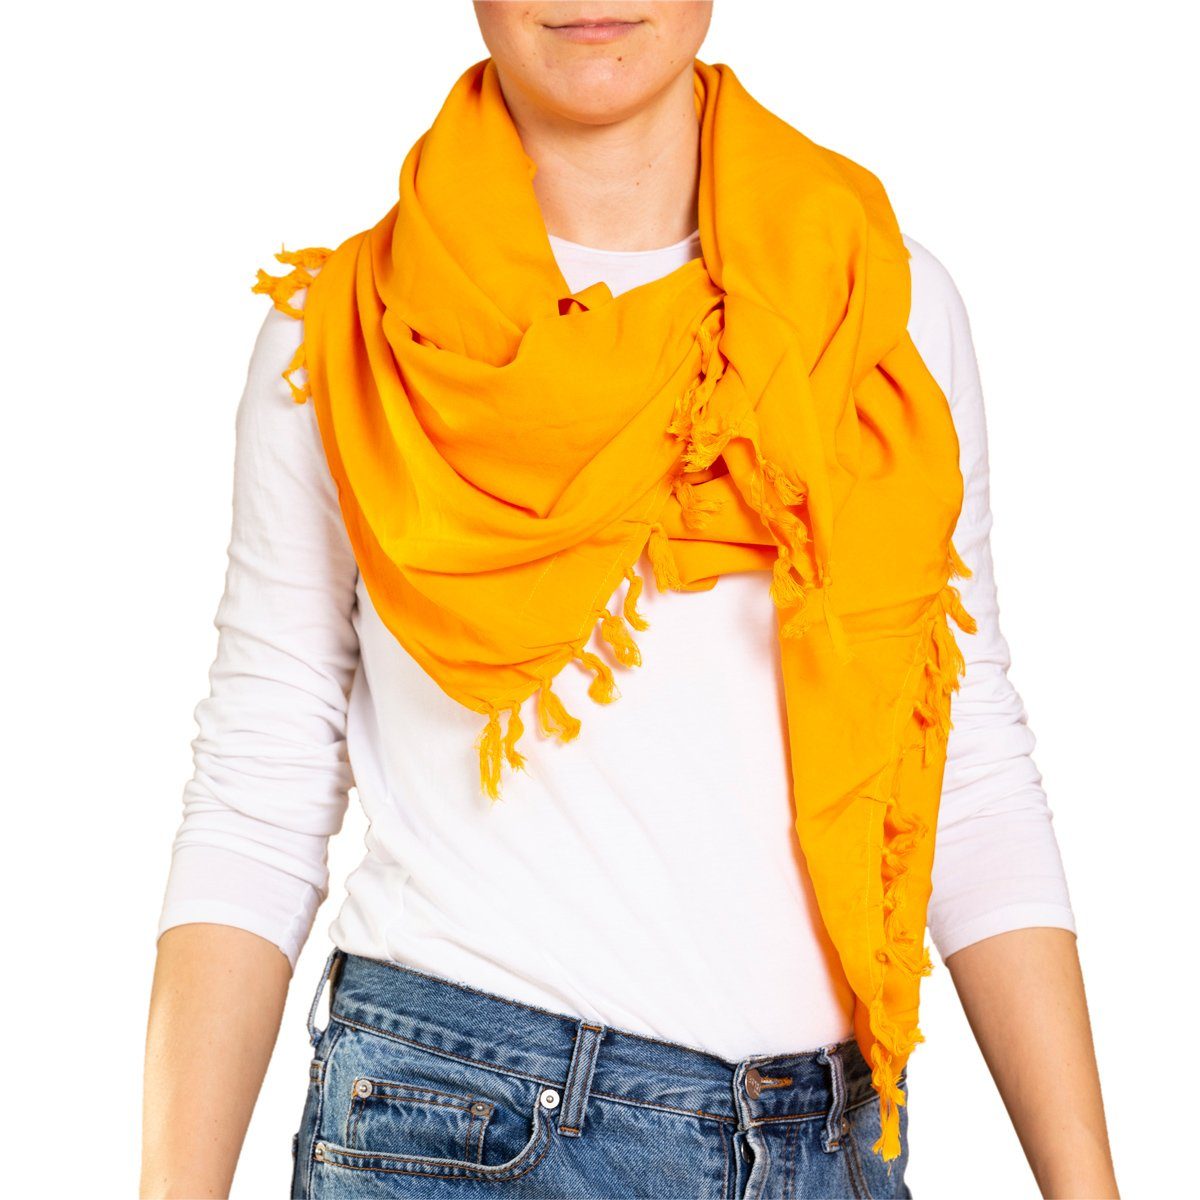 PANASIAM Halstuch weicher Schal aus hochwertiger Viskose den man als Schultertuch Stola, Winterschal oder als wunderbar großes Halstuch tragen kann gelb-orange